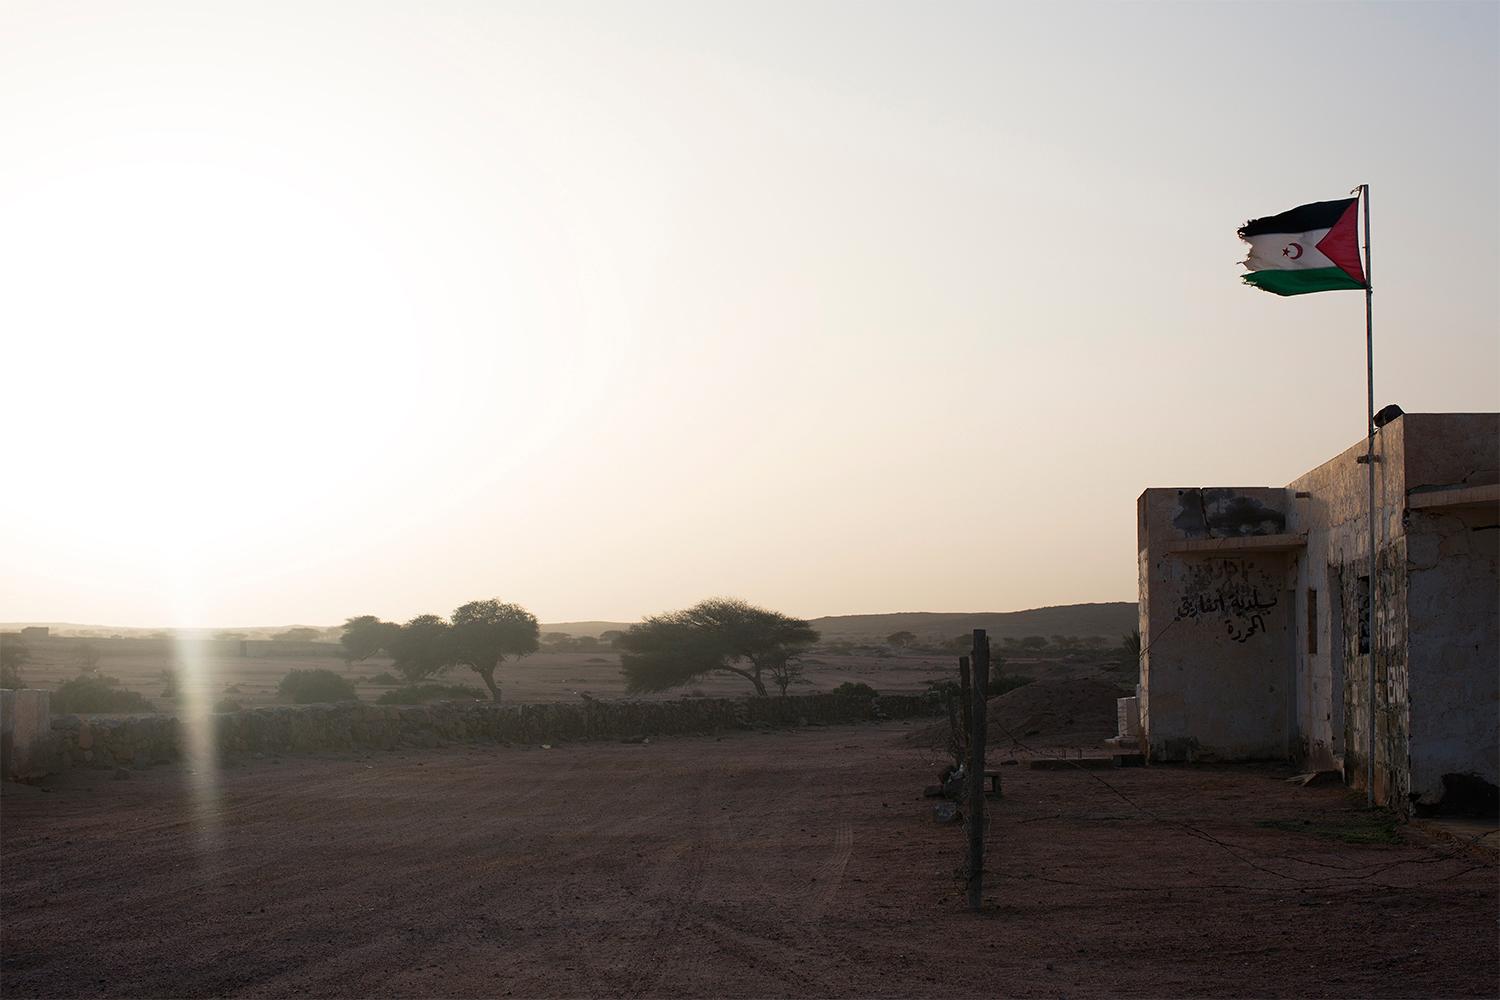 Staden Tifariti kontrolleras av befrielserörelsen Polisario och utgör någon form av huvudstad i de så kallade befriade områdena. Det är ett nomadsamhälle med ett tusental invånare, uppbyggt kring Polisarios armébaser, en skola, en FN-bas och ett sjukhus. Foto: Johan Persson